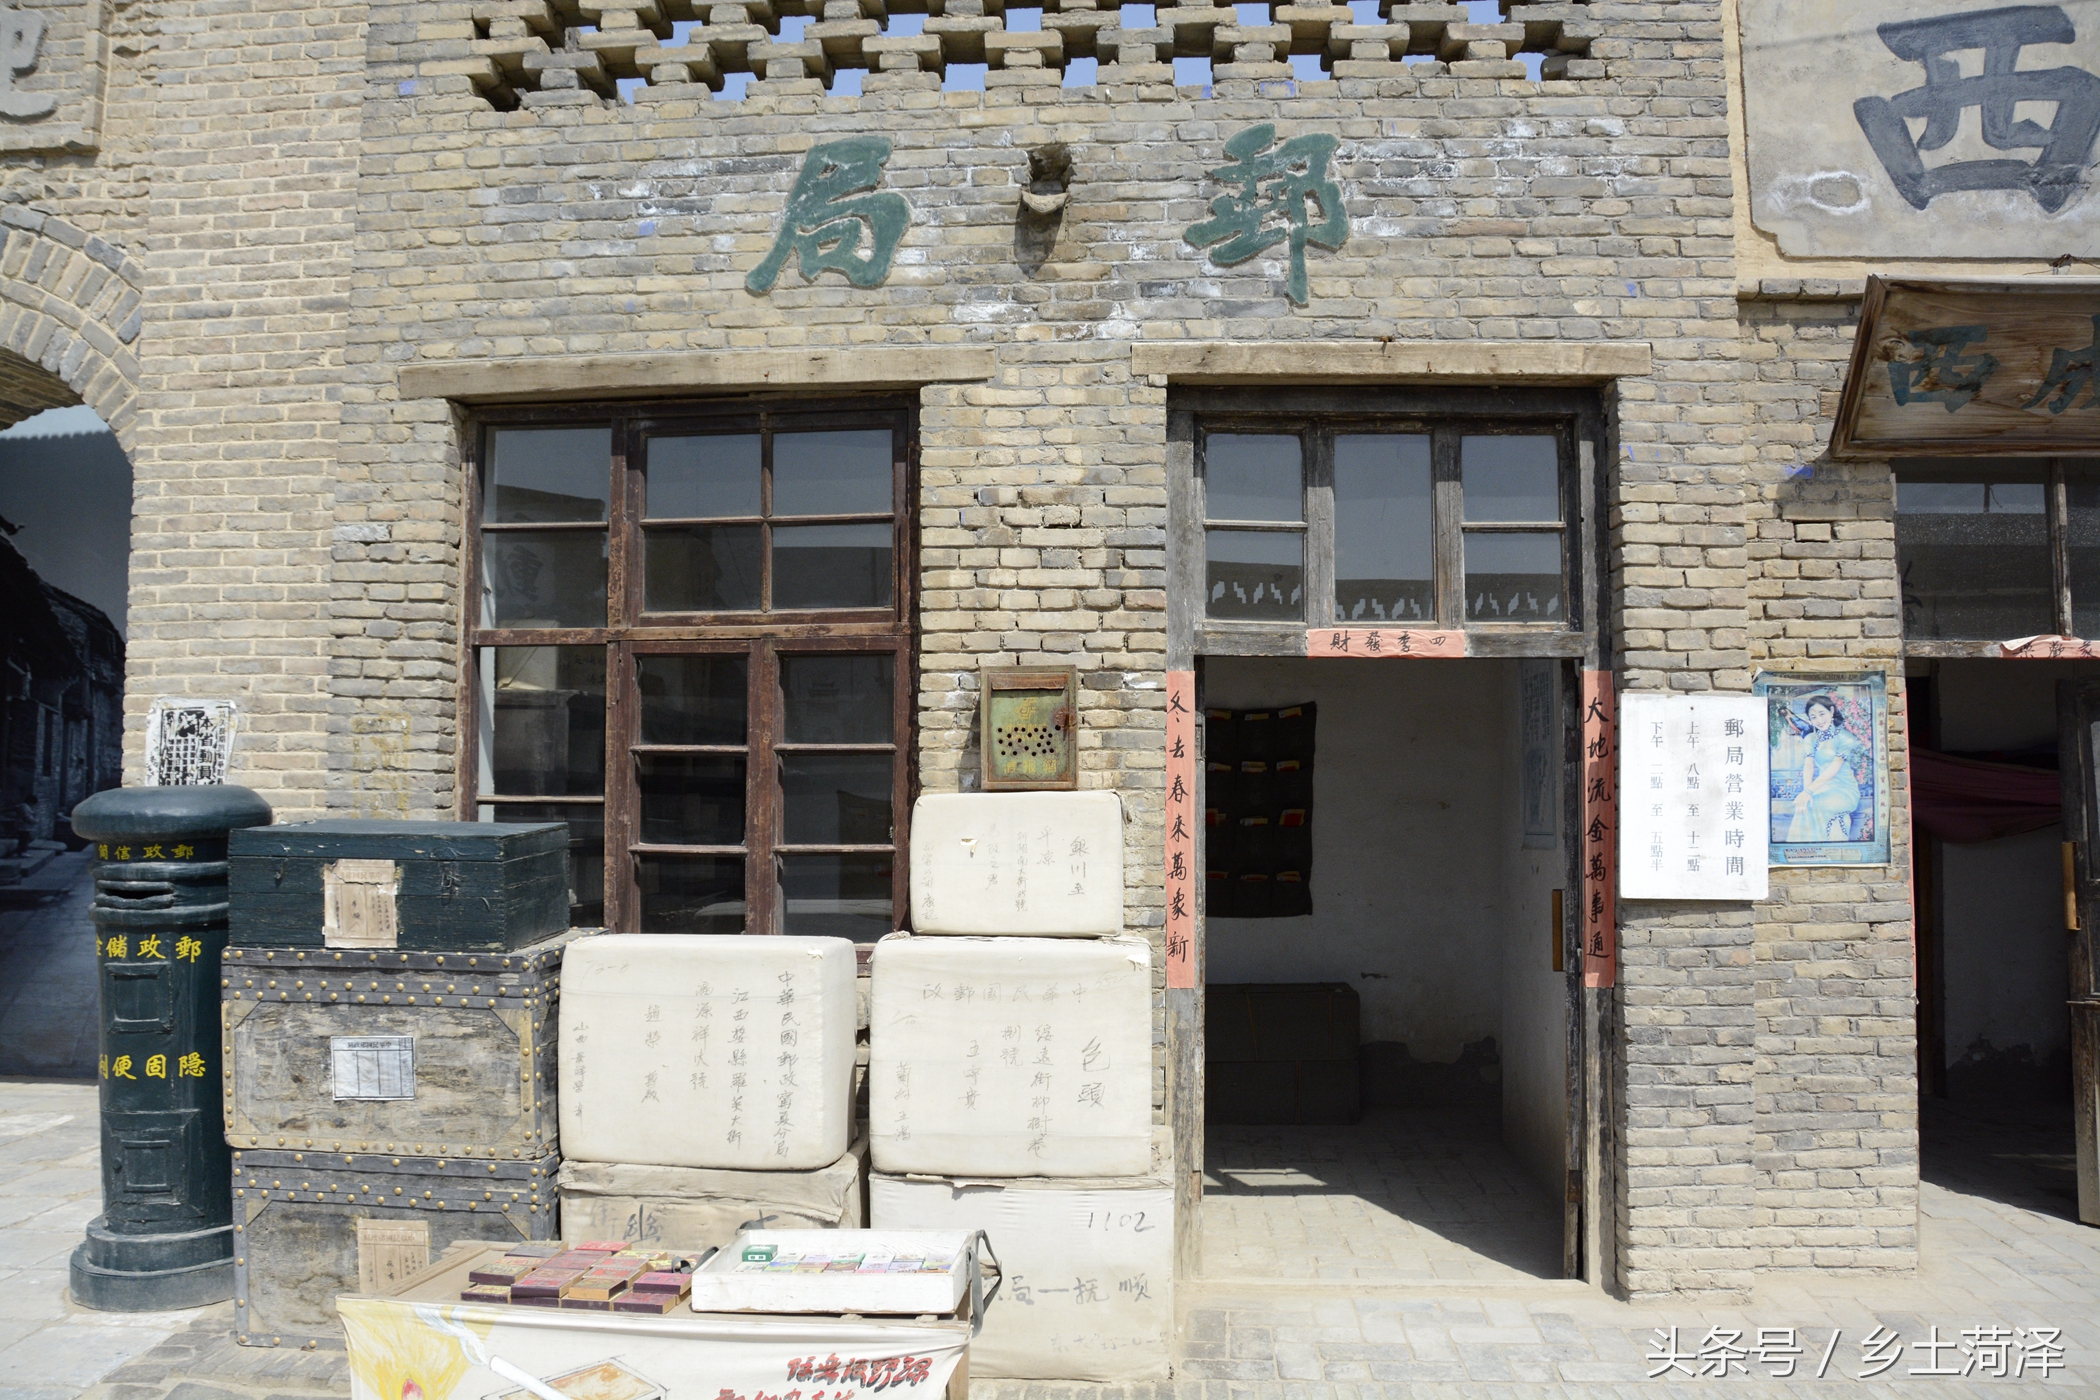 也是马鸿逵官邸旧址,原址位于宁夏回族自治区银川市中心中国农业